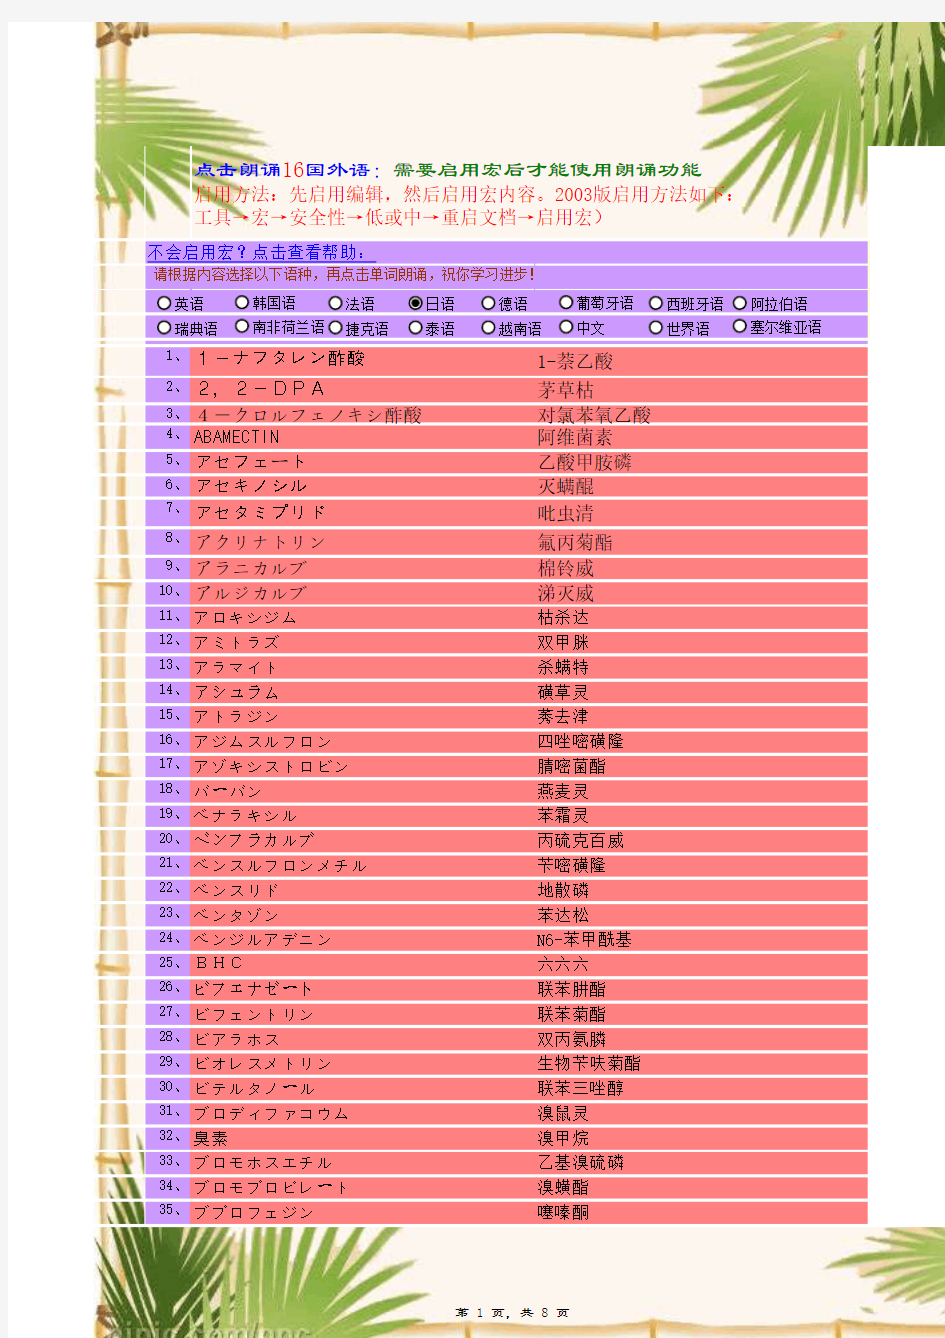 日本肯定列表制度茶叶农残限量表(中英日对照)--(新带真人朗读学习日文功能)